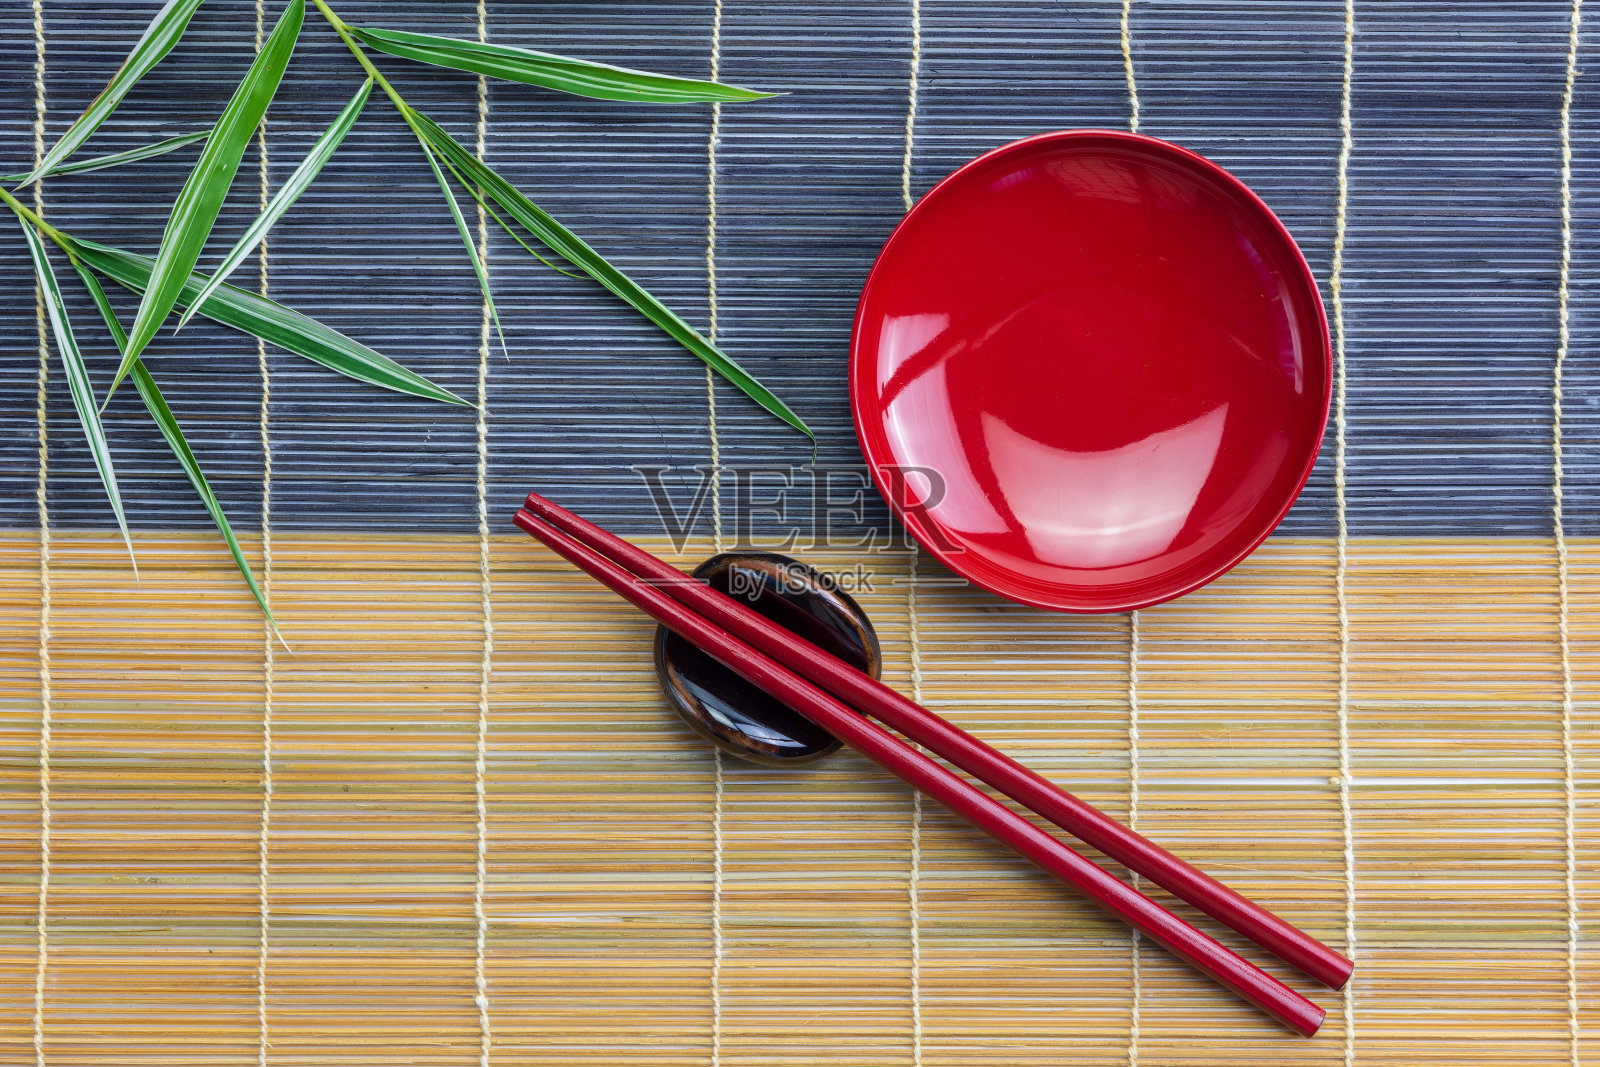 把红碗倒空，用红筷子夹好，竹叶放在竹席上照片摄影图片